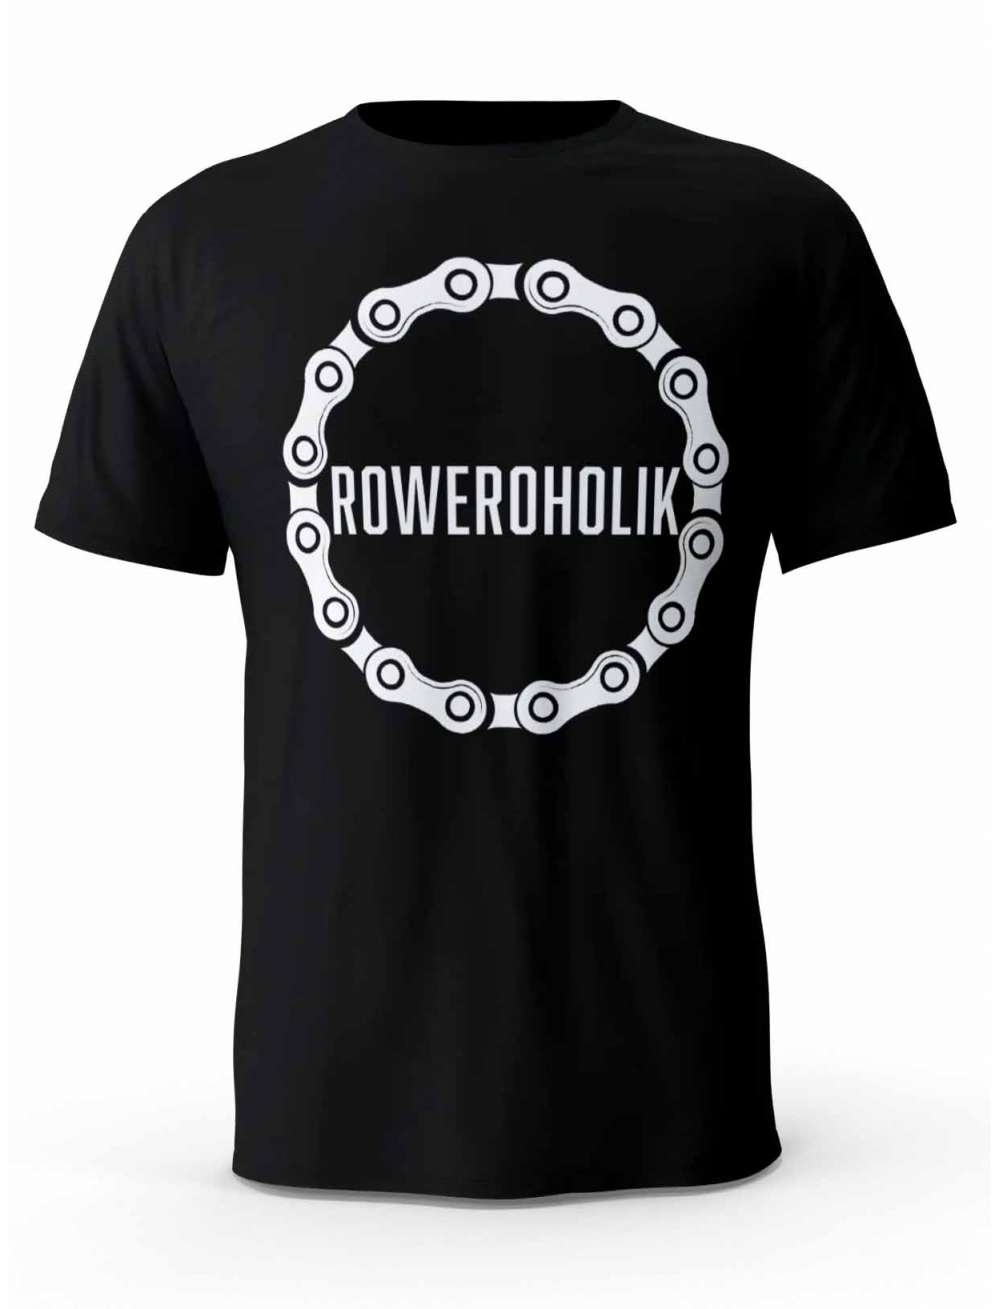 Koszulka Męska, Roweroholik, T-shirt Dla Mężczyzny